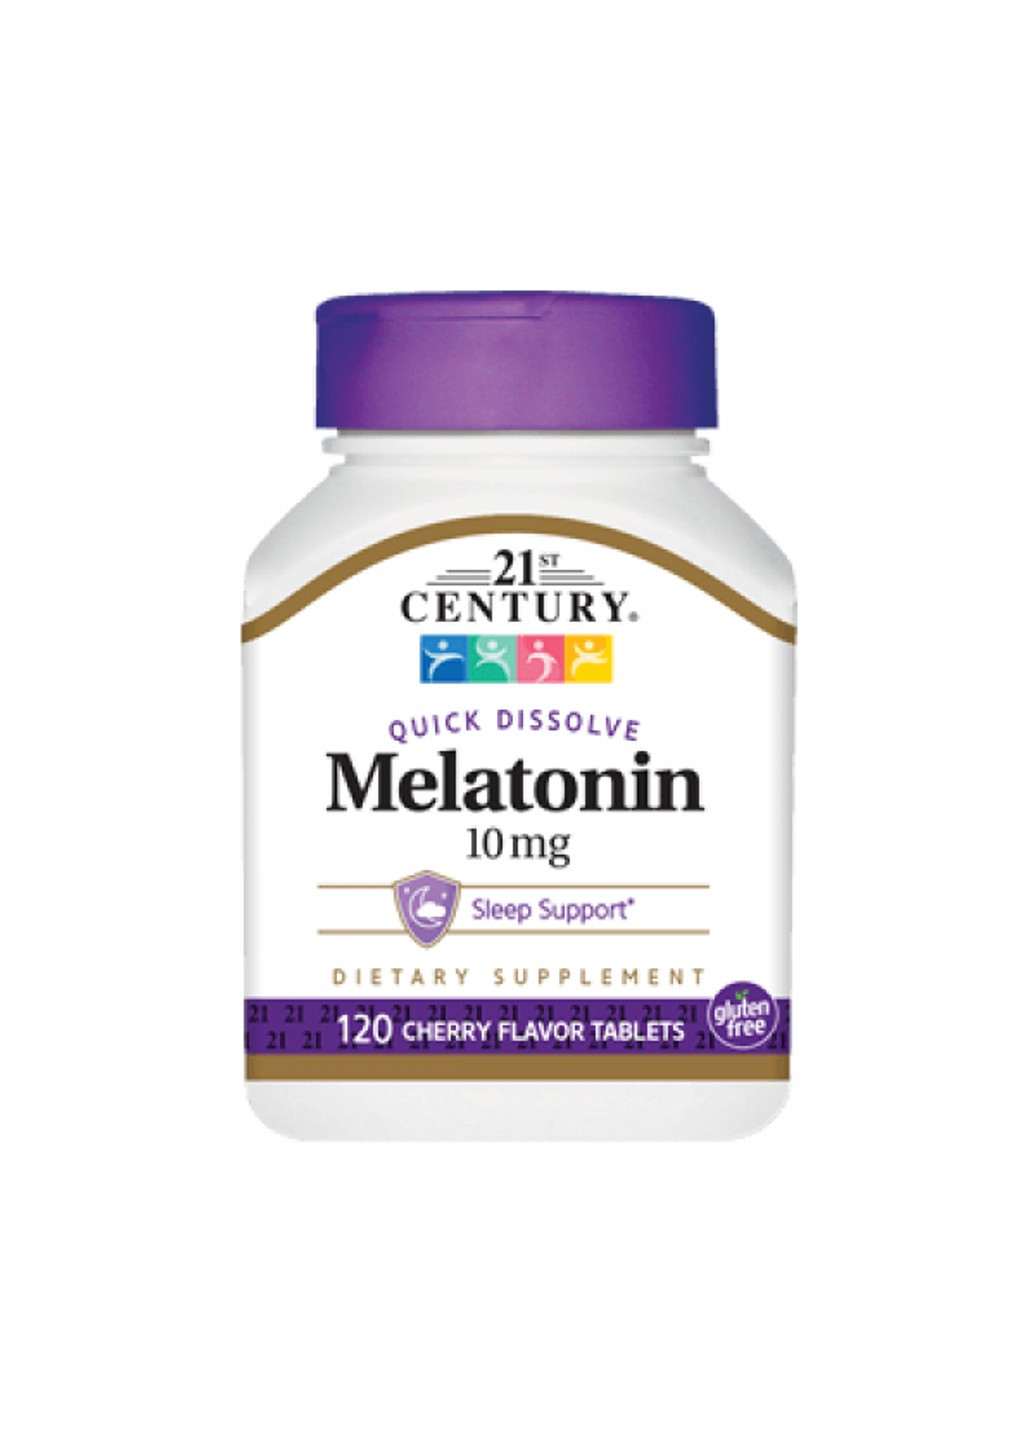 Мелатонин Melatonin 10 mg (120 таб) 21 век центури вишня 21st Century (255409831)